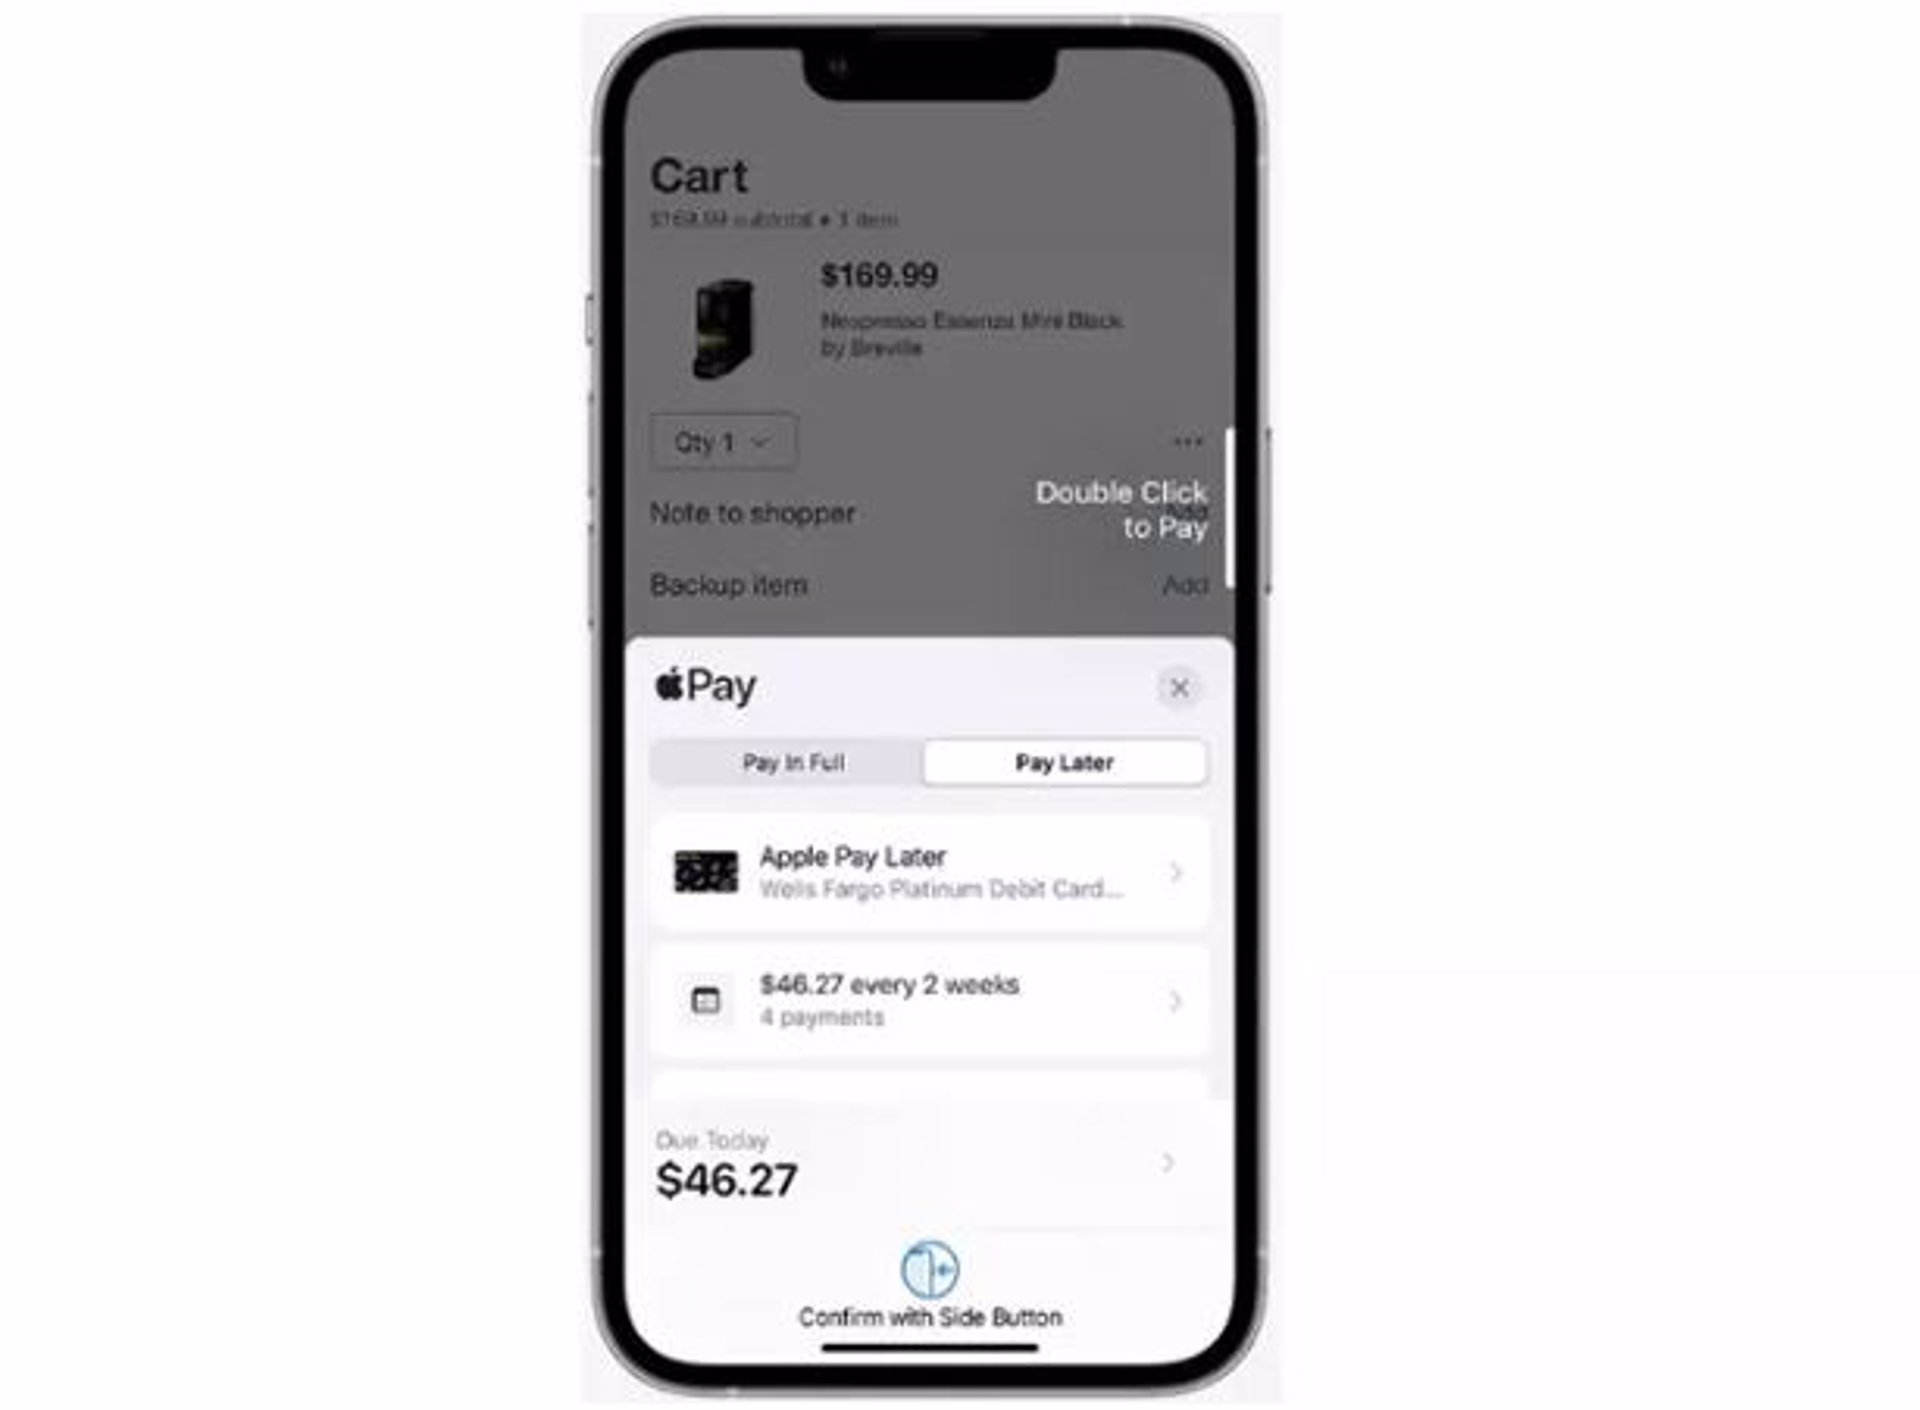 Apple descontinuará su modelo Pay Later tras unos meses disponible solo en Estados Unidos